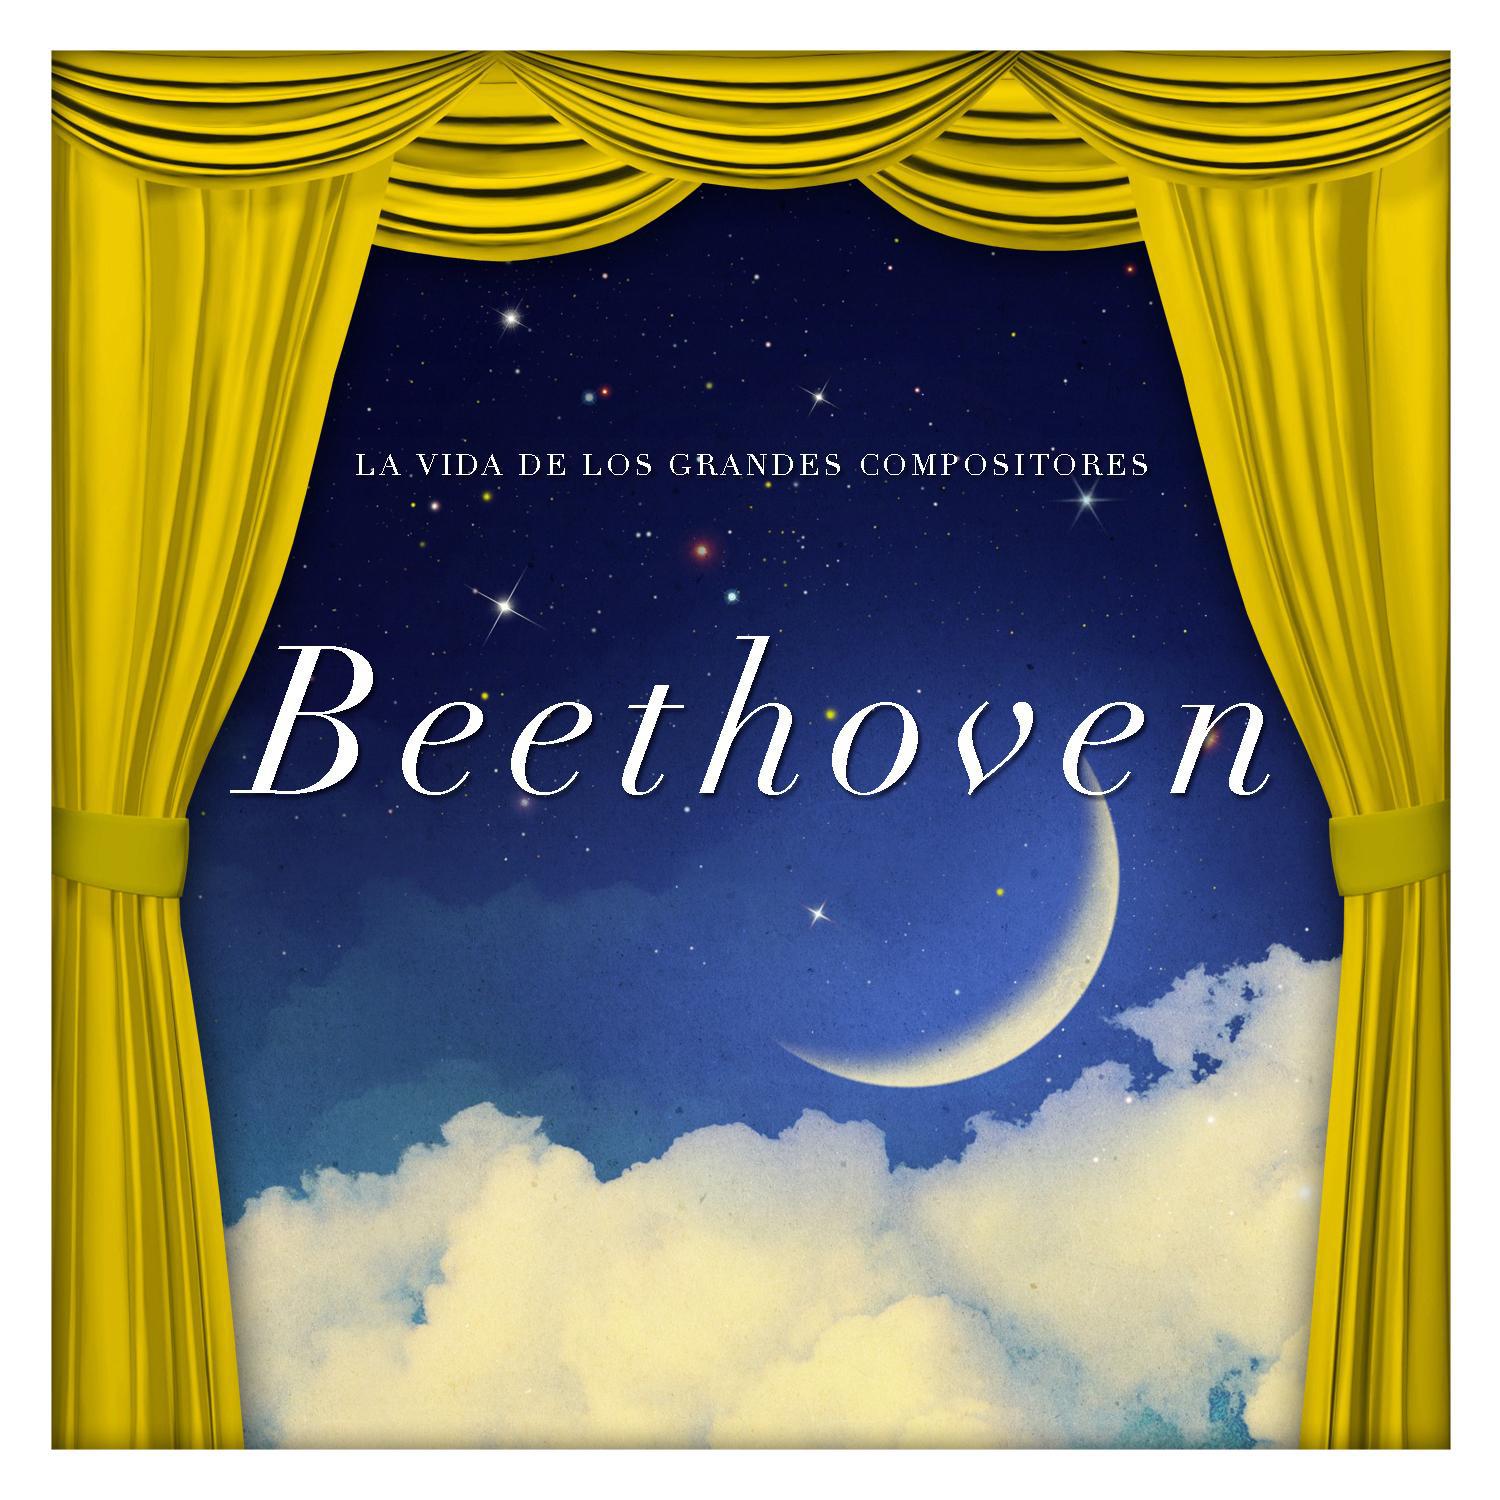 La Vida de los Grandes Compositores Beethoven专辑